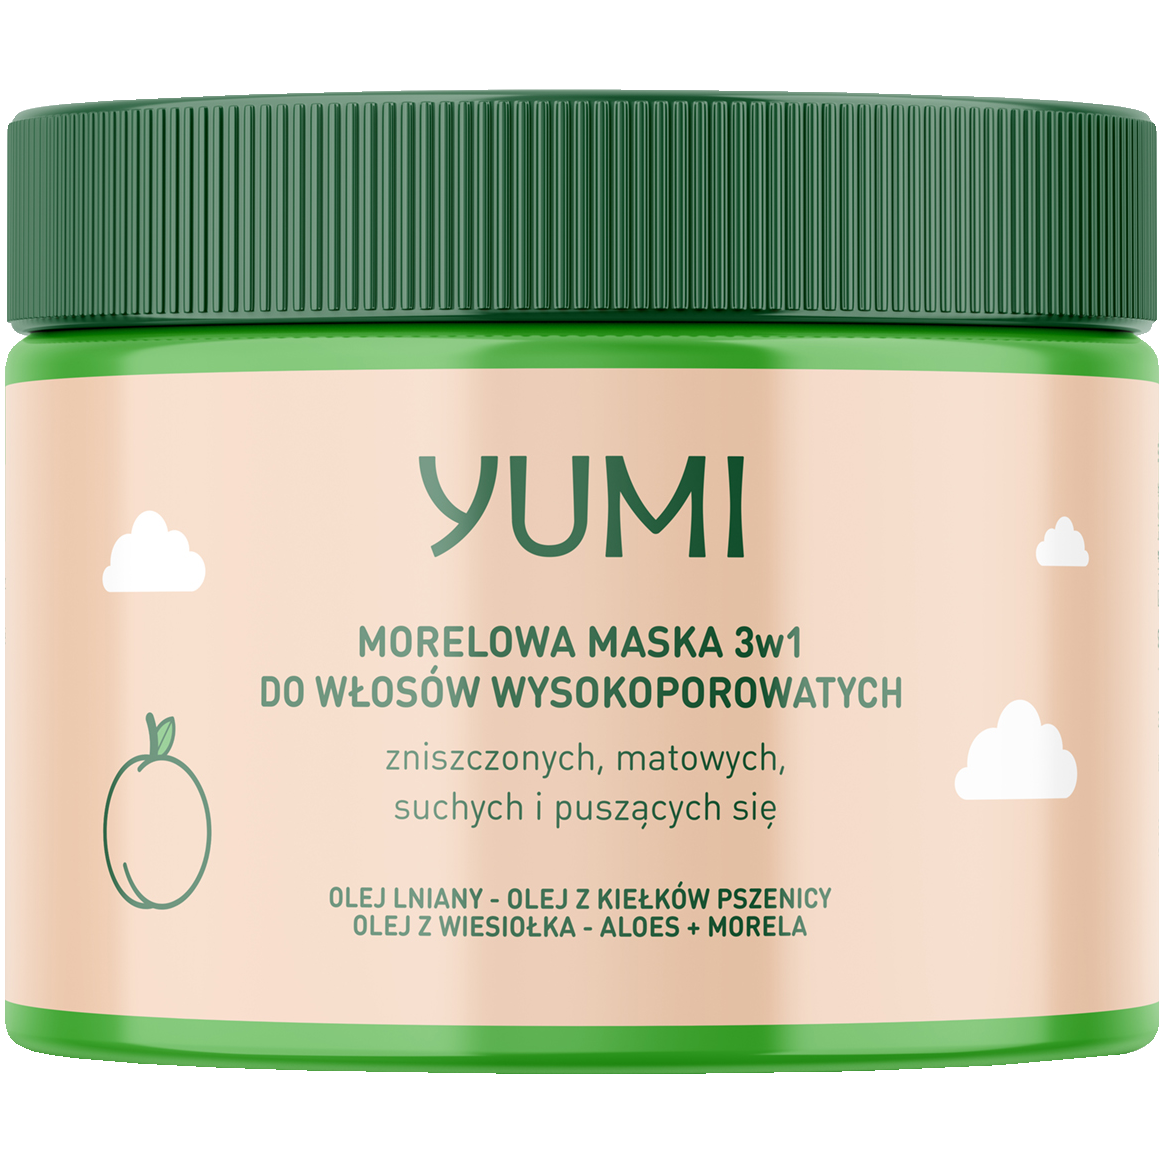 Yumi 3w1 morelowa maska do włosów wysokoporowatych, 300 ml | hebe.pl